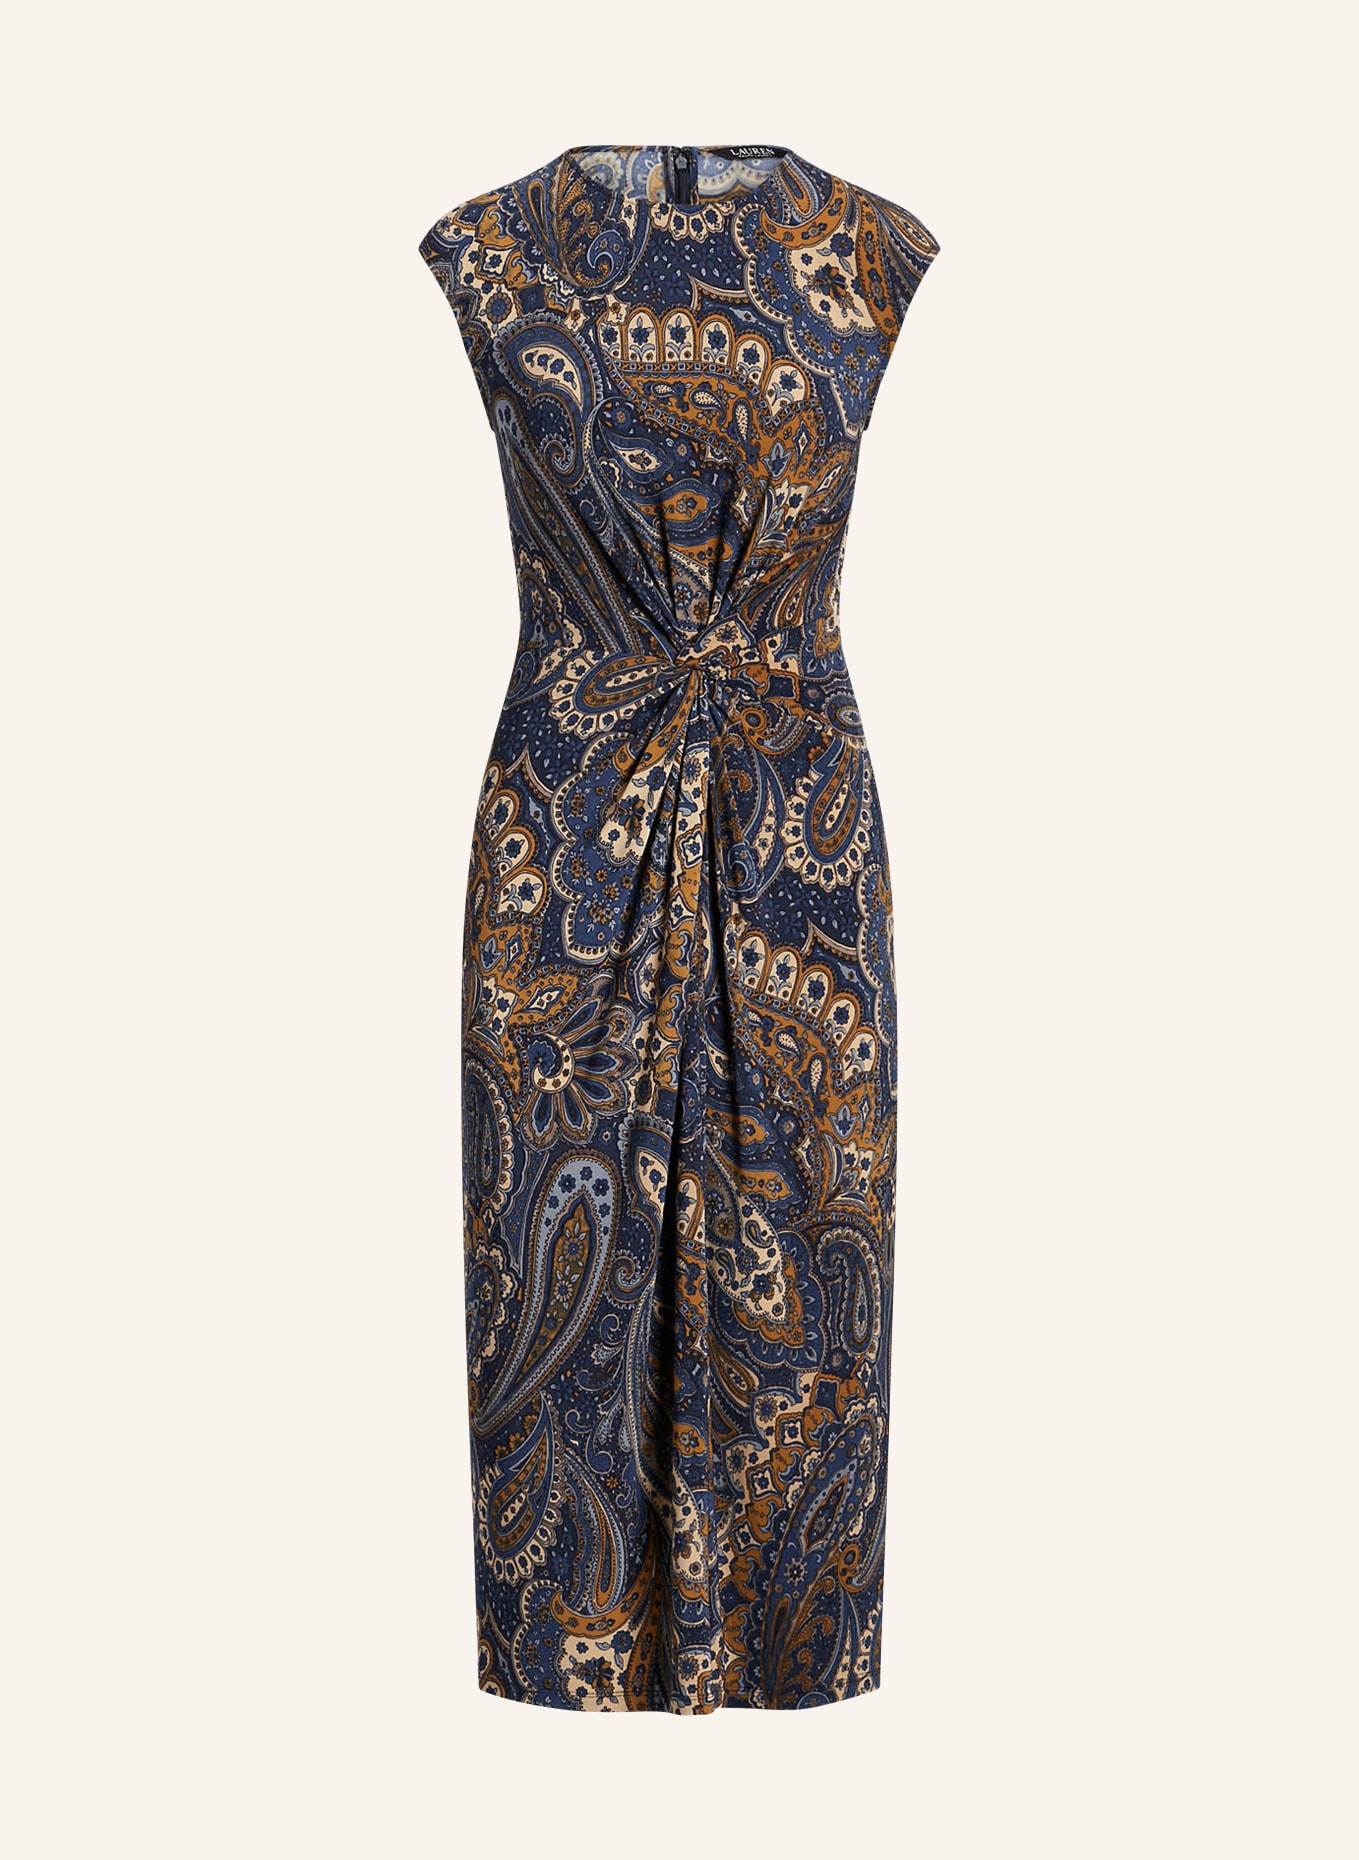 LAUREN RALPH LAUREN Jersey dress, Color: DARK BLUE/ COGNAC/ BEIGE (Image 1)